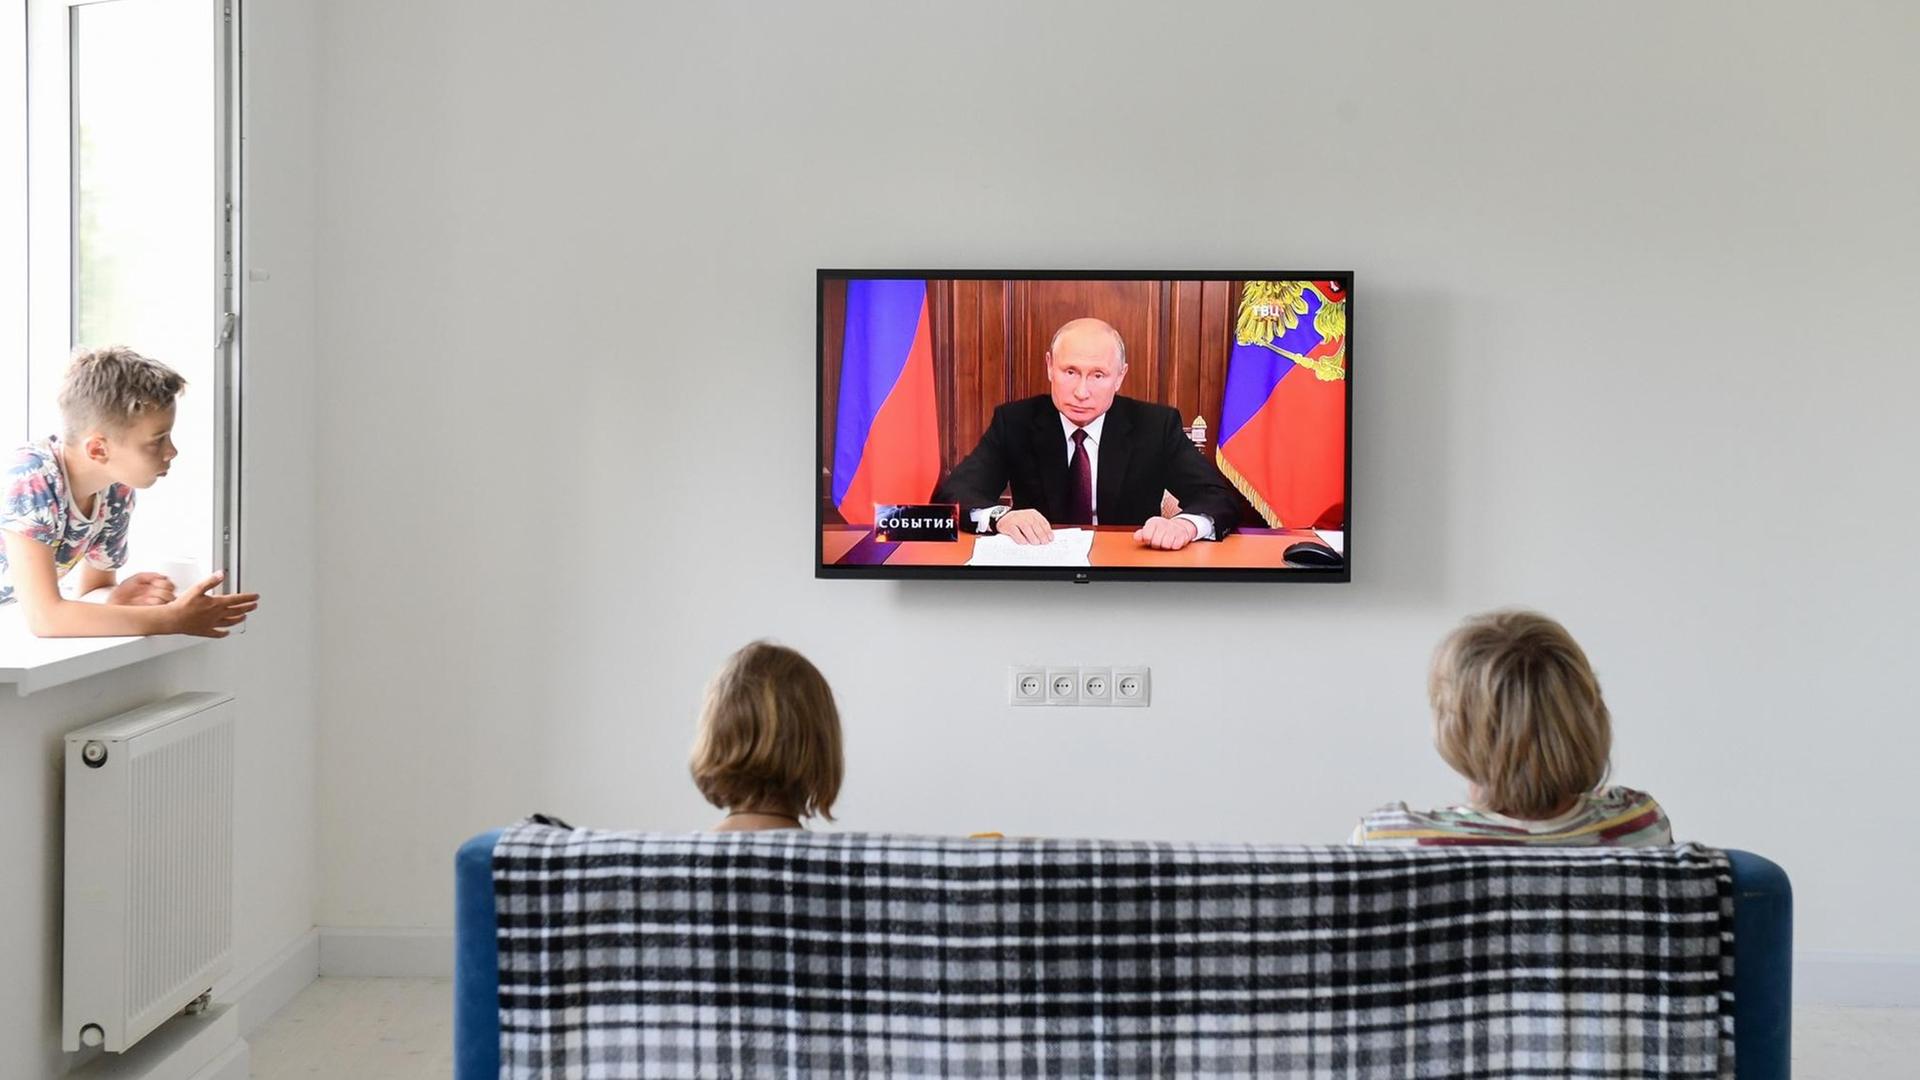 Der russische Präsident Wladimir Putin hält eine Ansprache im Fernsehen. Zwei russische Bürgerinnen sitzen auf einem Sofa und hören zu.